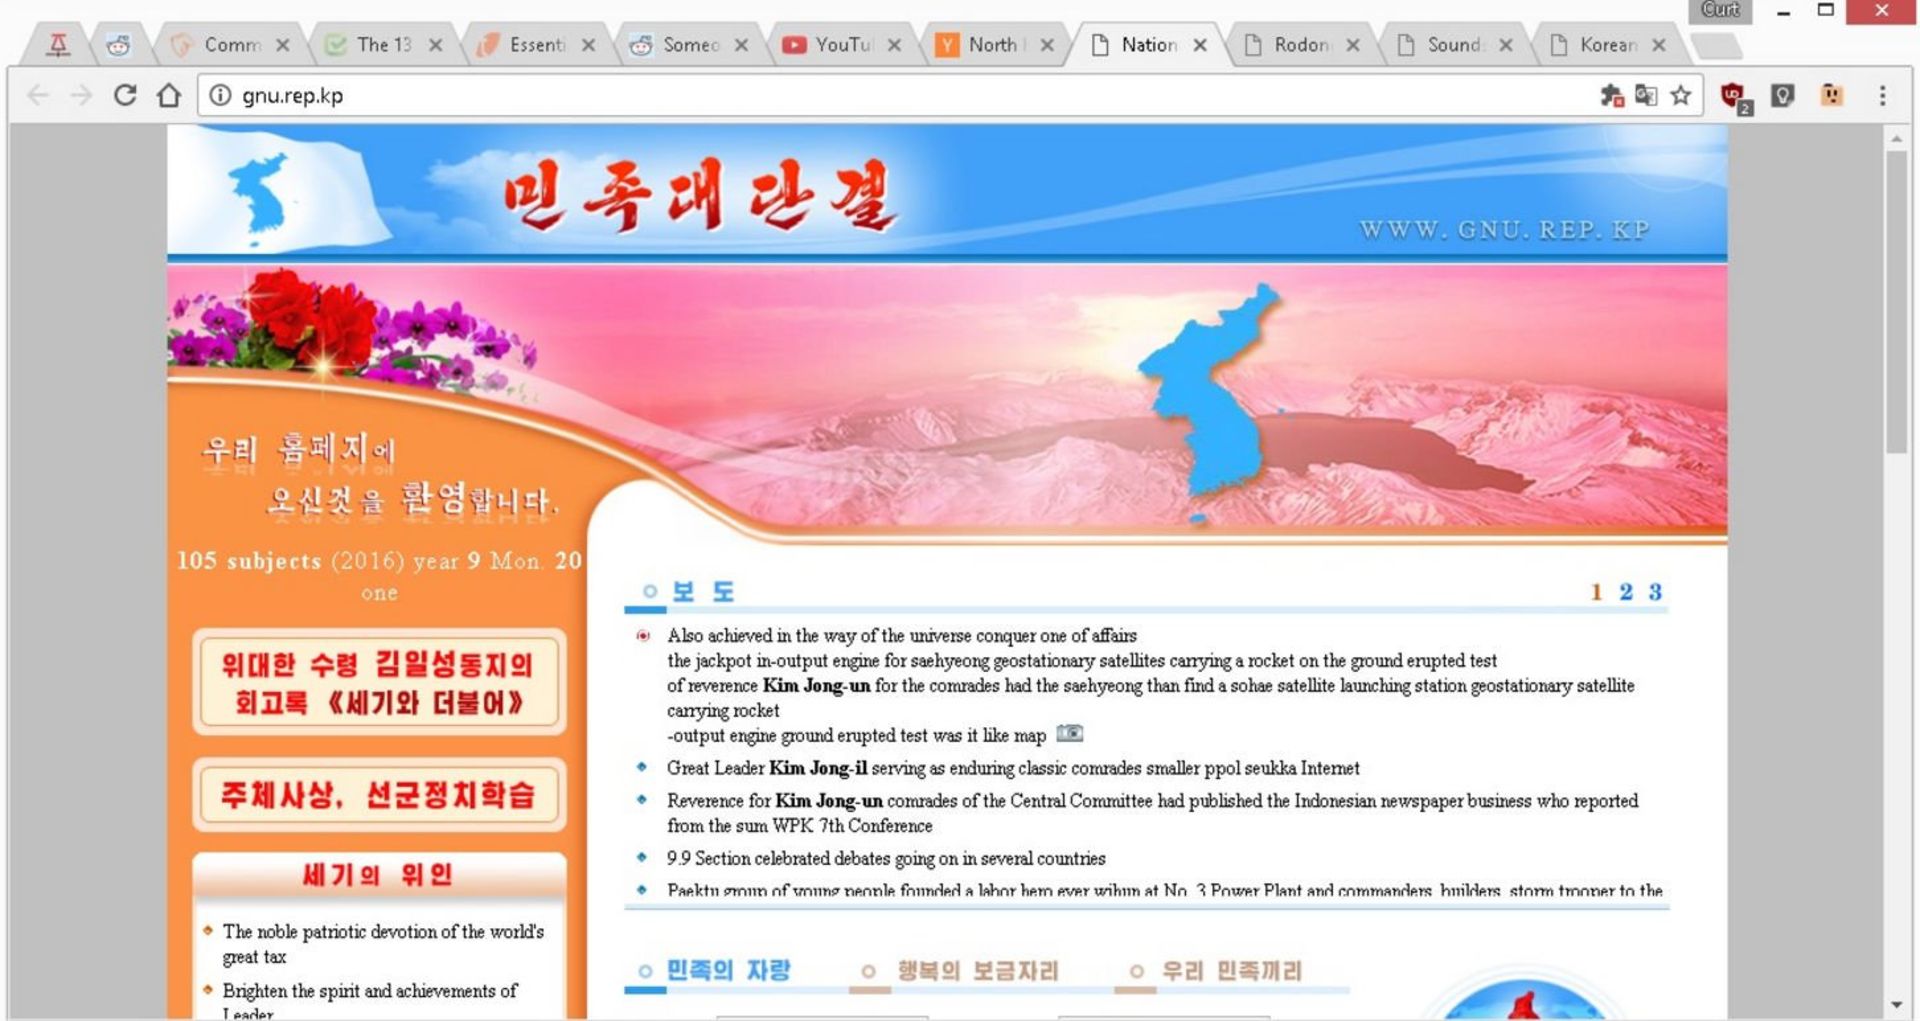 وبسایت های کره شمالی